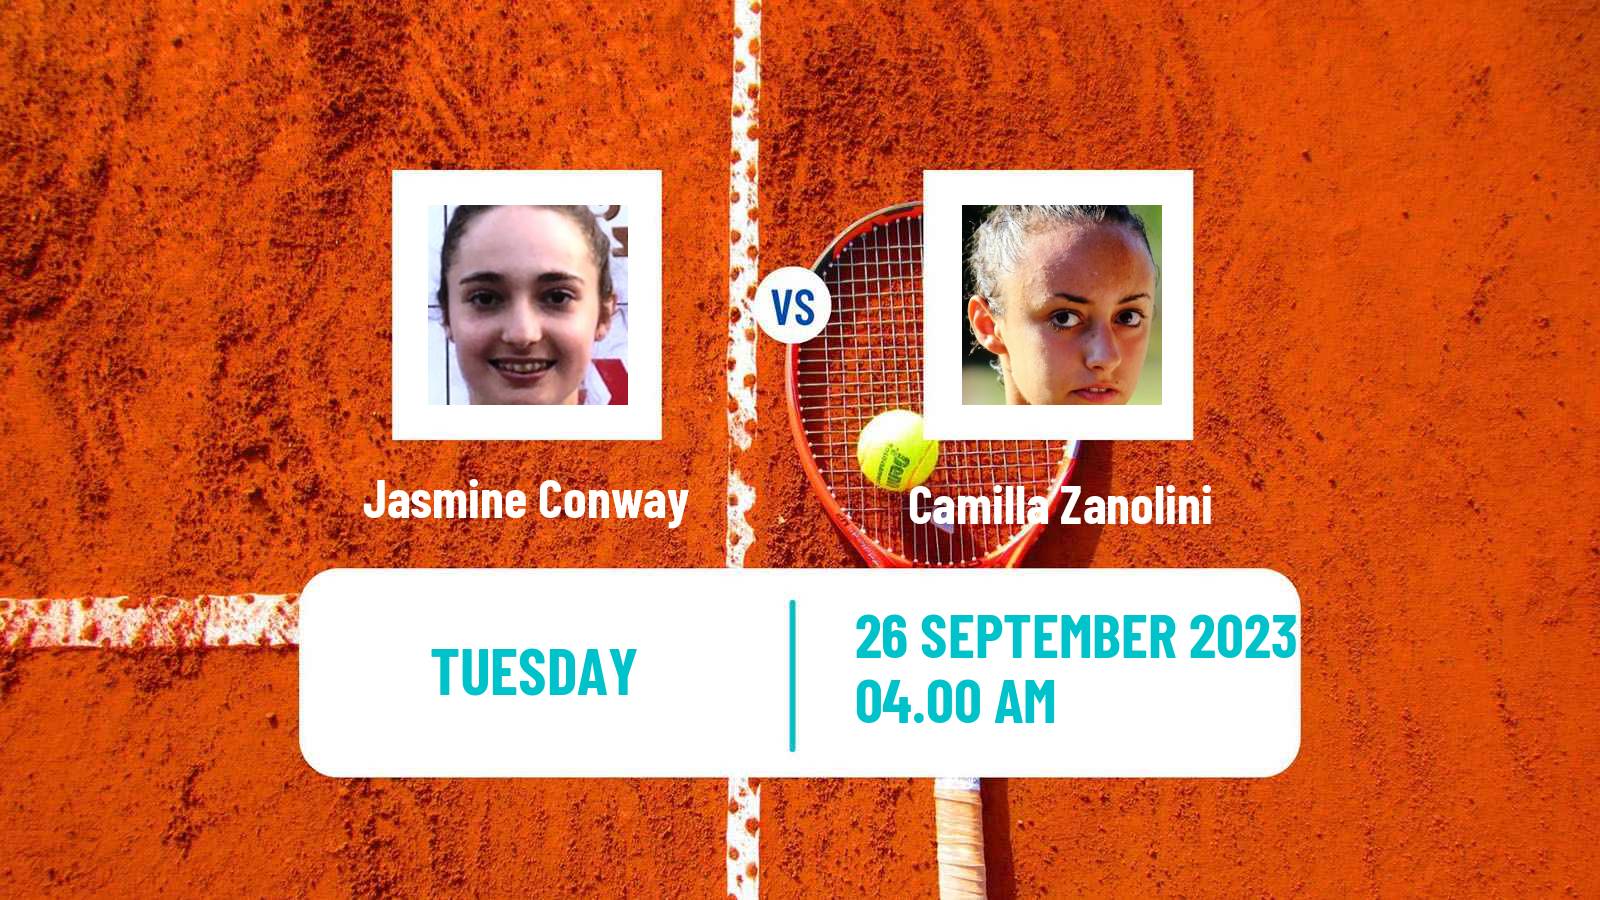 Tennis ITF W15 Monastir 34 Women Jasmine Conway - Camilla Zanolini